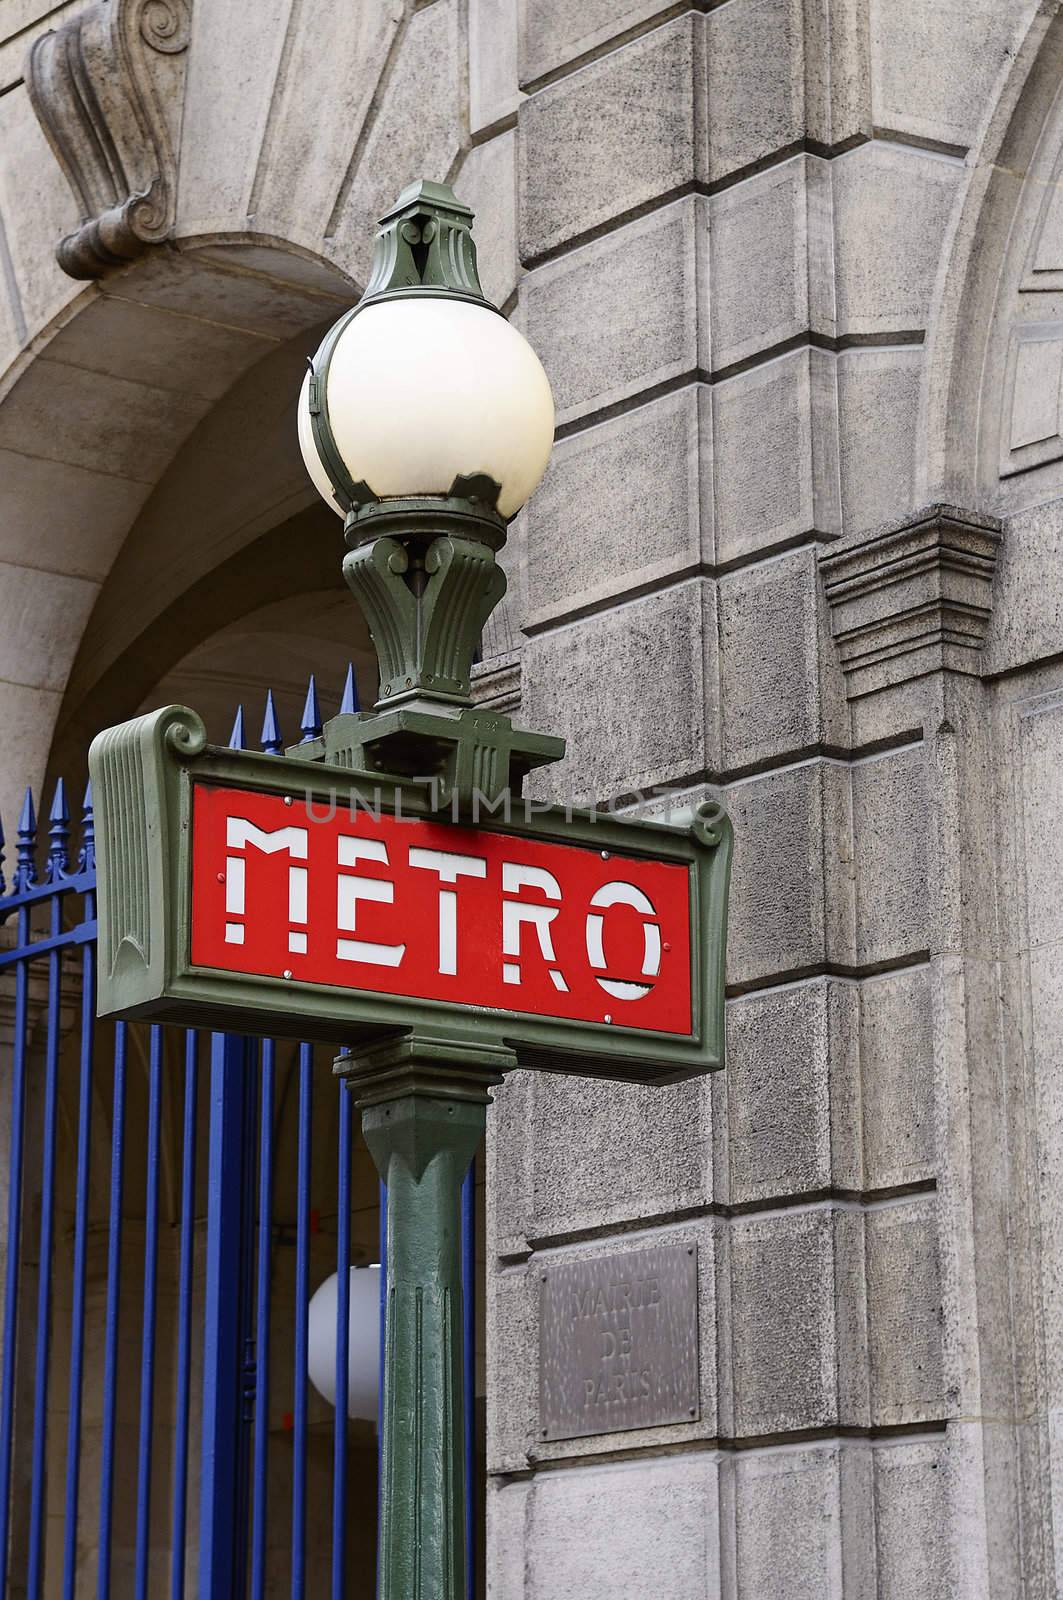 metro sign by ventdusud